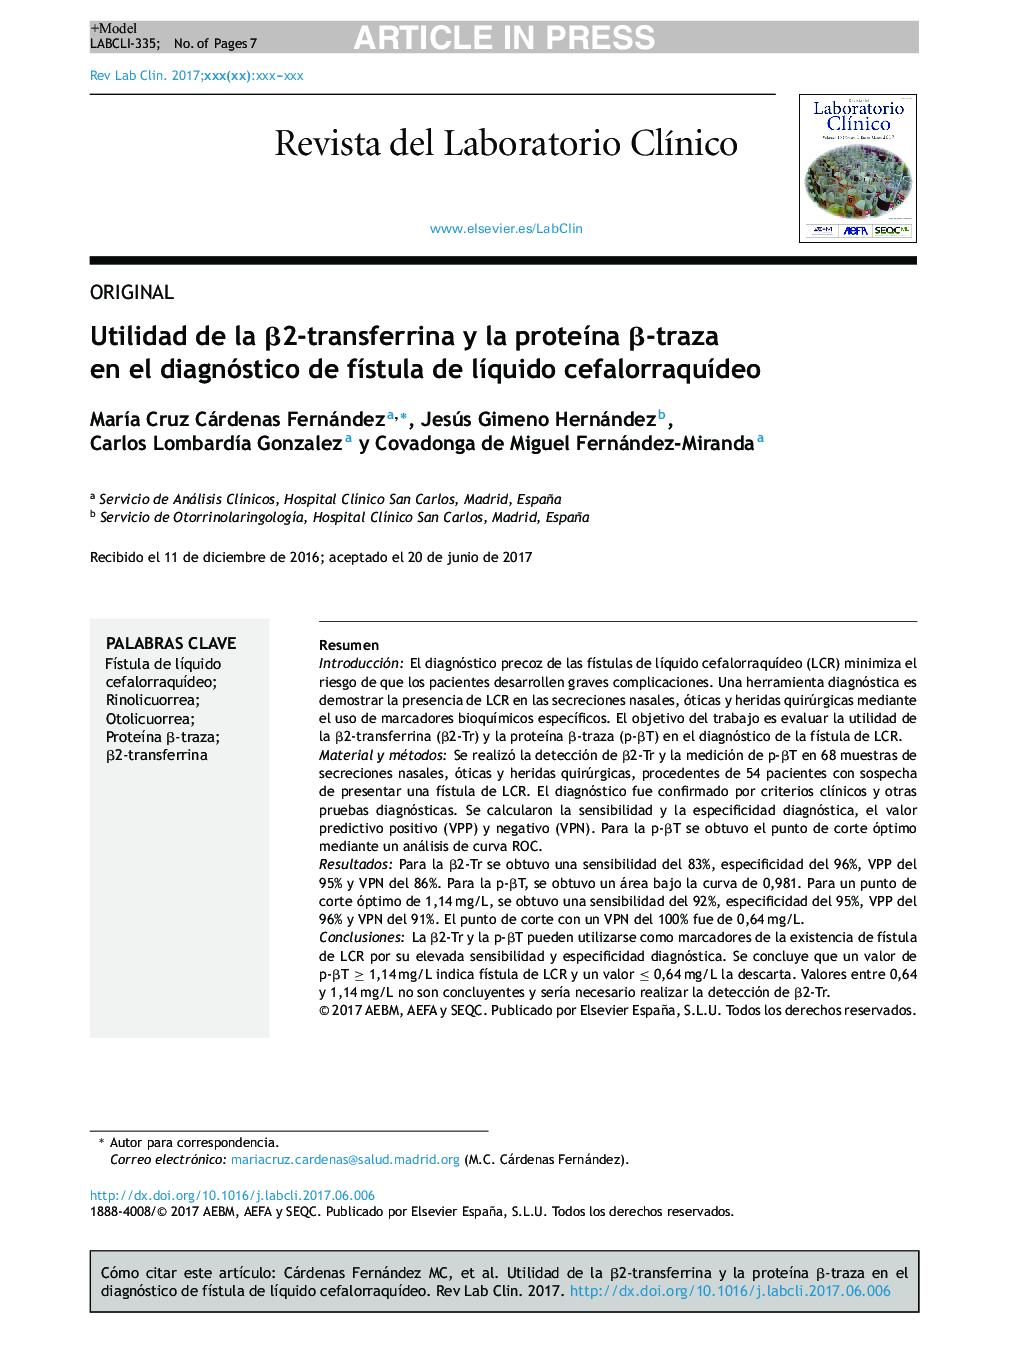 Utilidad de la Î²2-transferrina y la proteÃ­na Î²-traza en el diagnóstico de fÃ­stula de lÃ­quido cefalorraquÃ­deo